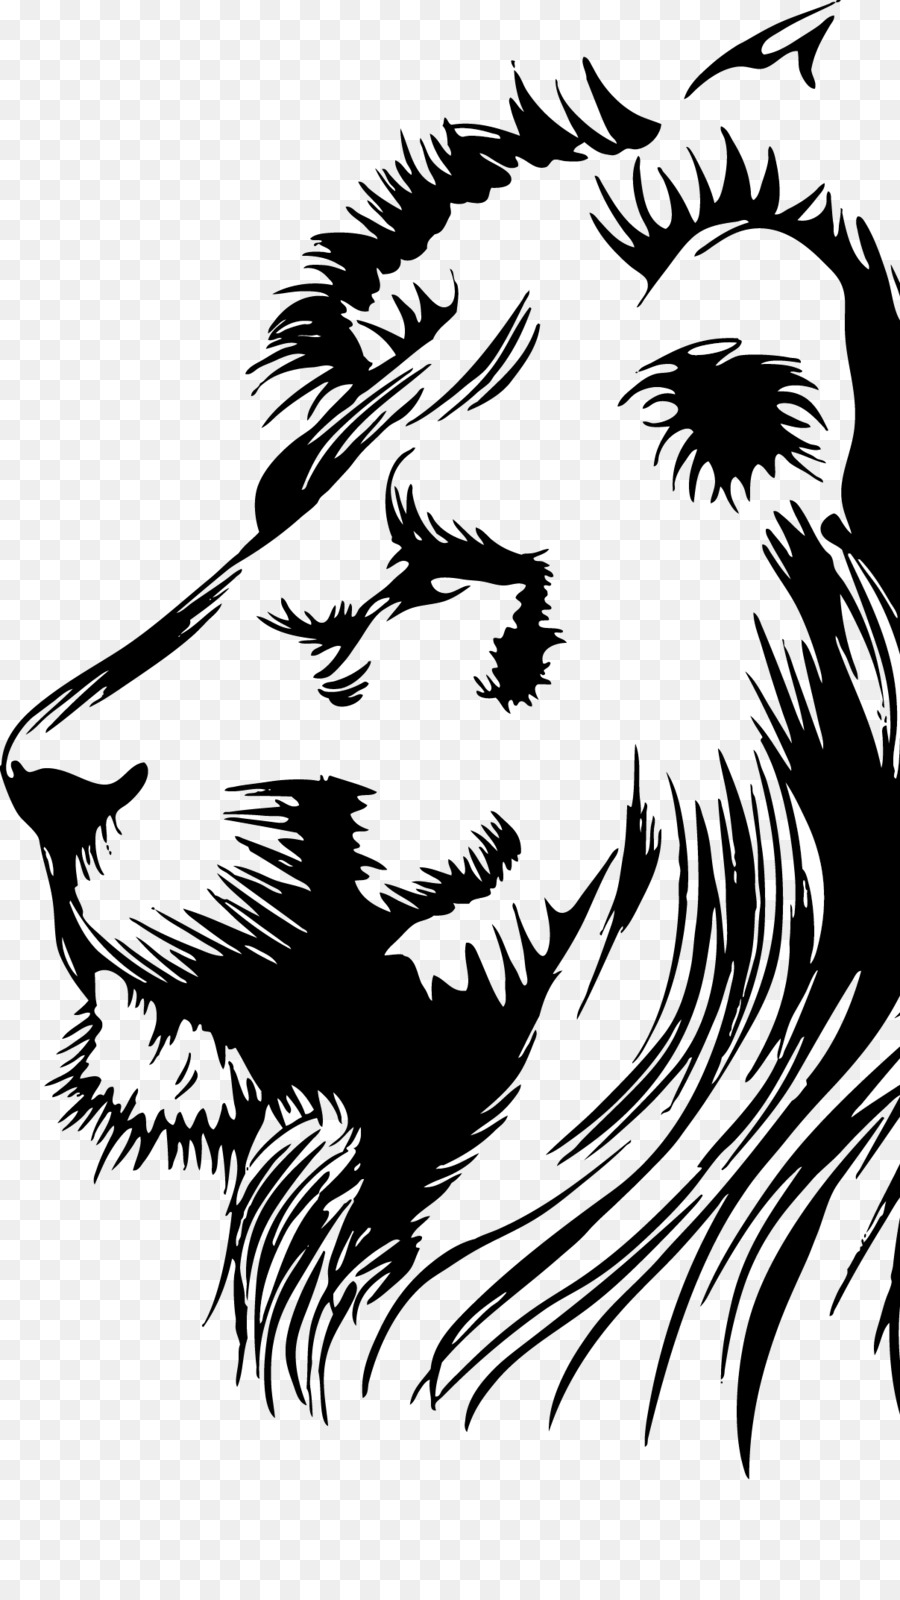 Lion Clip art Portable Network Graphics Image Illustration - lion silhouette png lion head png download - 1207*2144 - Free Transparent Lion png Download.